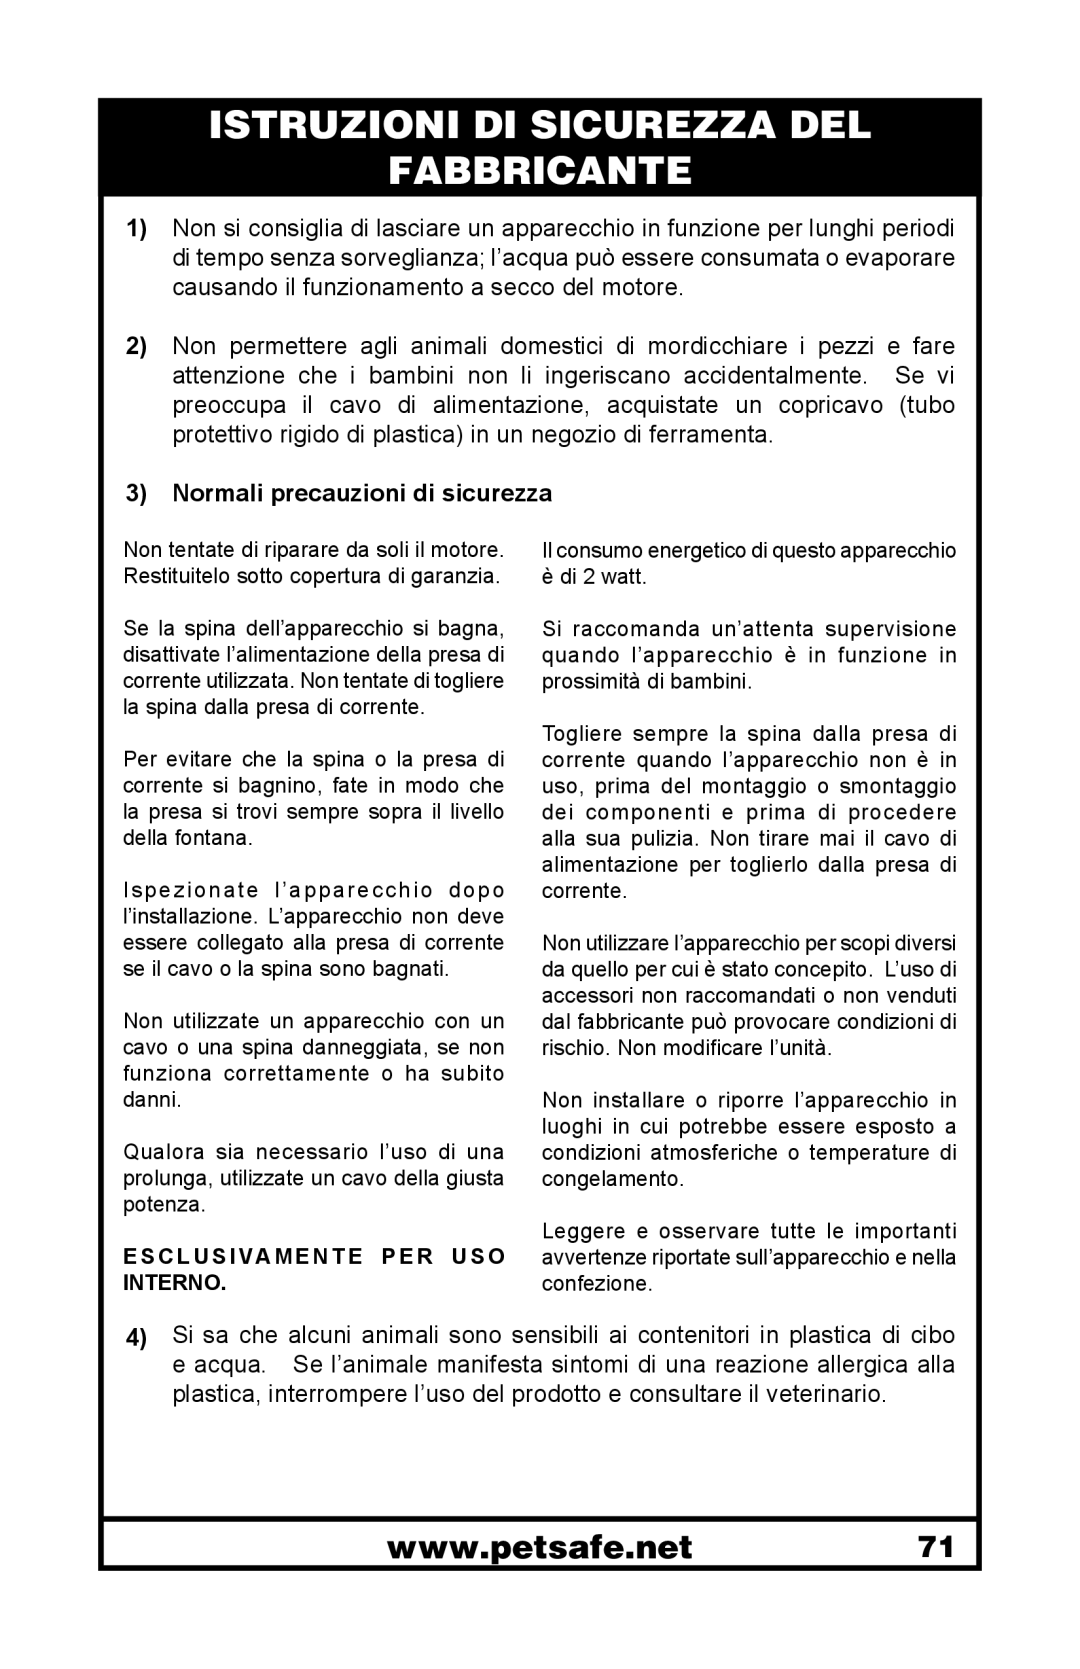 Petsafe 400-1255-19 manuel dutilisation Istruzioni Di Sicurezza Del Fabbricante, Normali precauzioni di sicurezza 